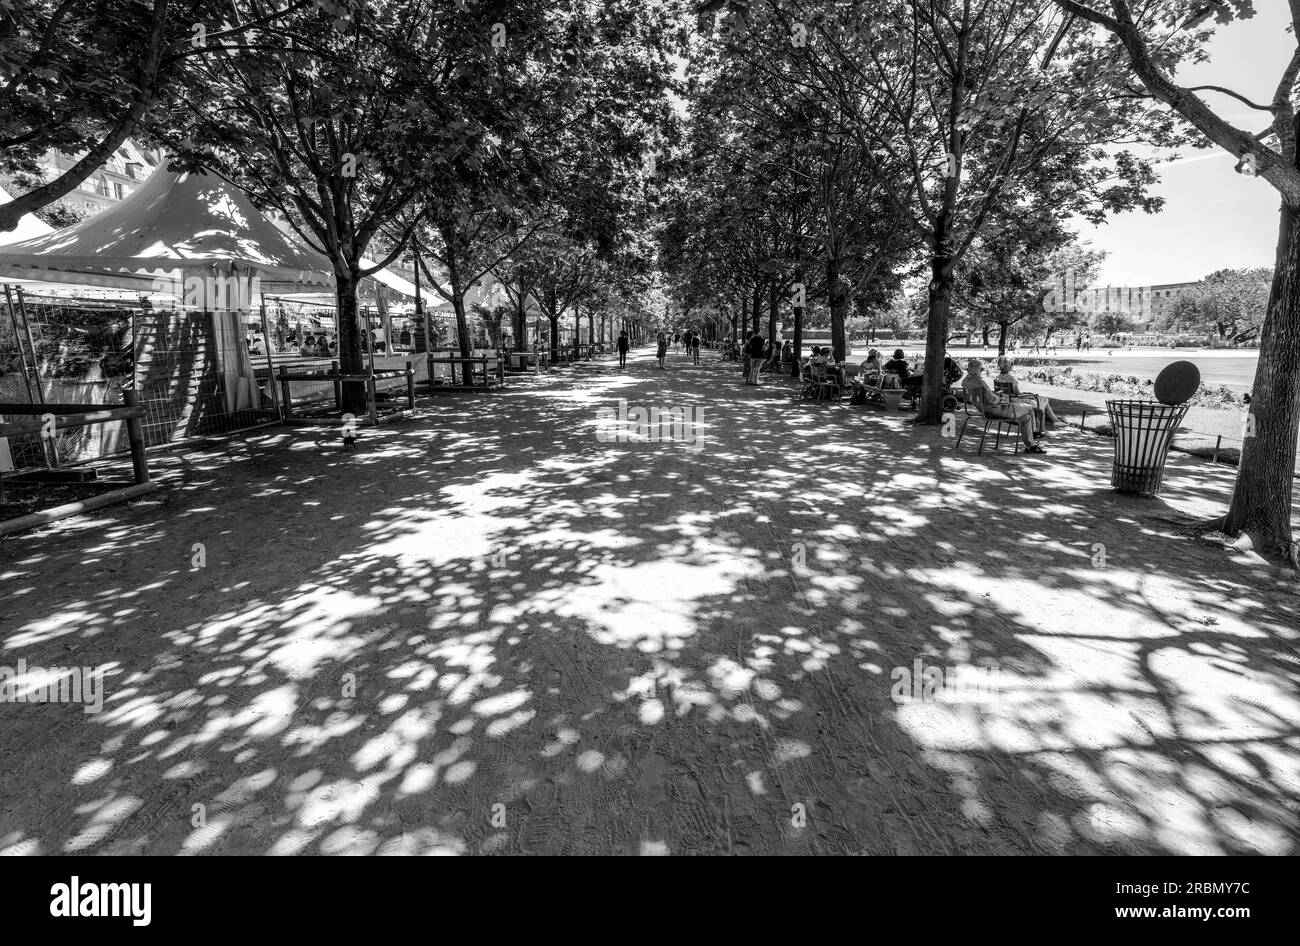 Jardin des Tuileries. Motivi, silouettes in un viale ombreggiato nel XVII secolo, giardini delle Tuileries nelle calde giornate di sole. 1 Arr. Place de la Concorde, Parigi Foto Stock